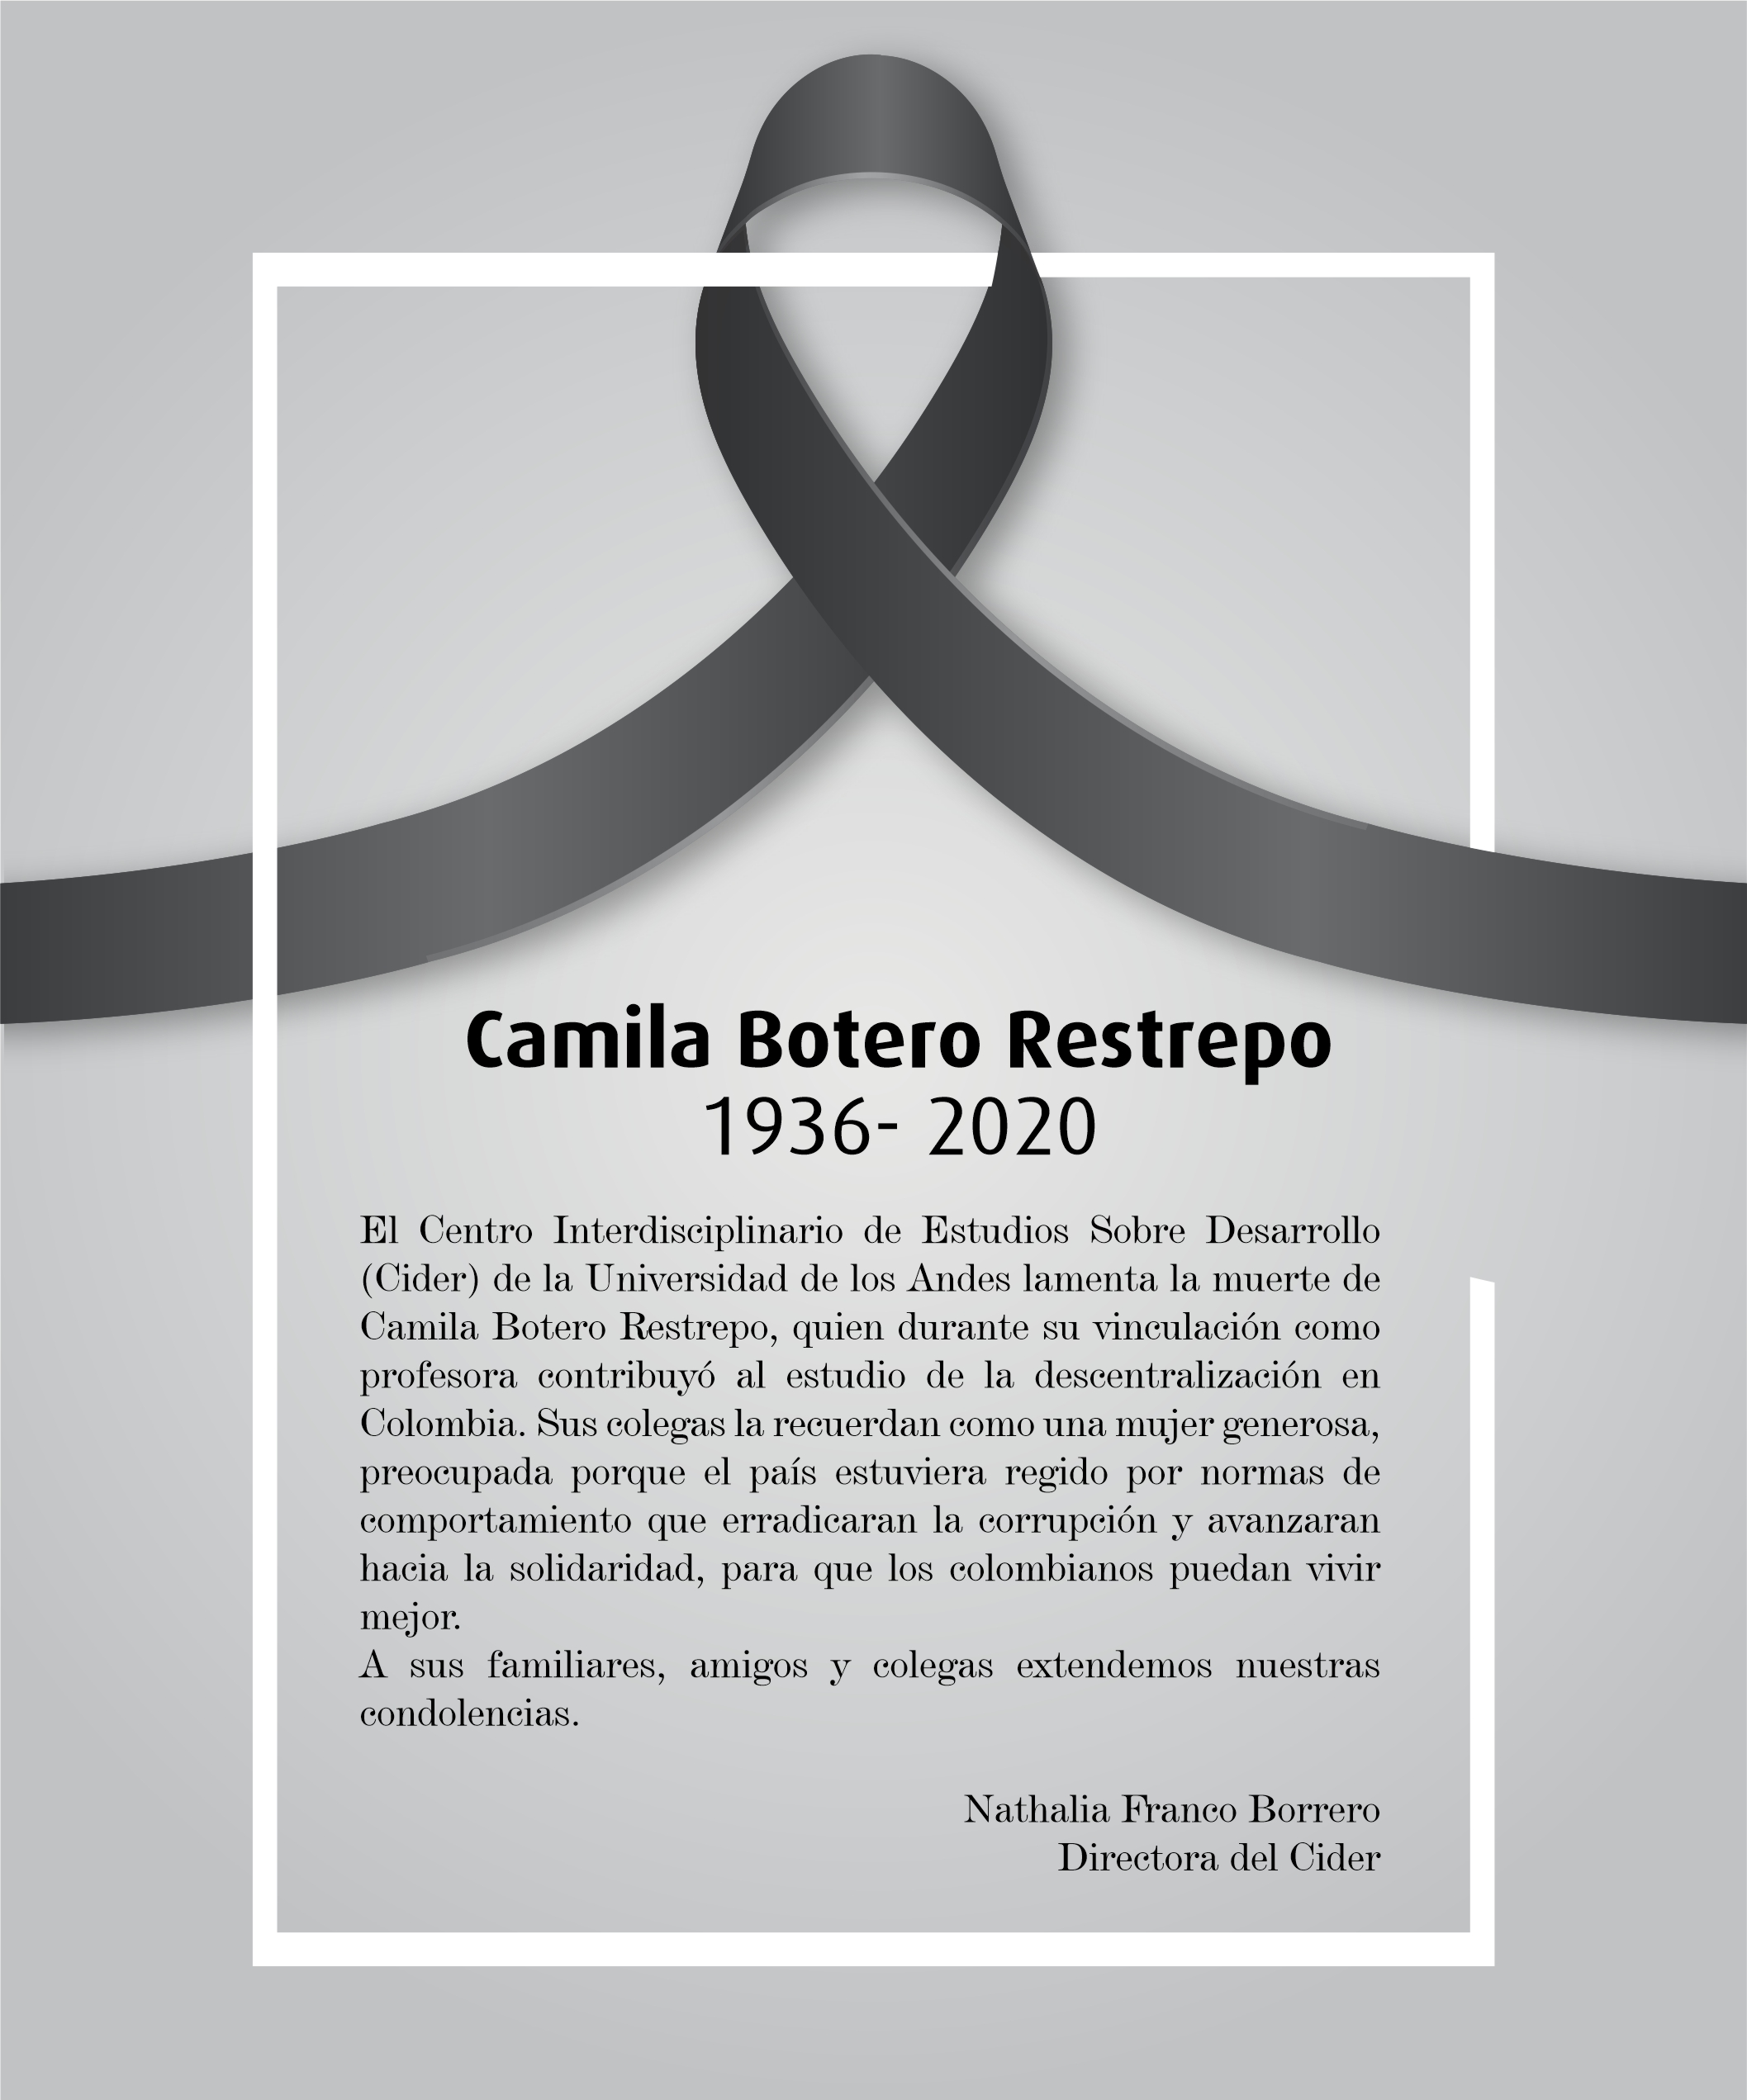 El Cider lamenta la muerte de Camila Botero Restrepo- Cider | Uniandes